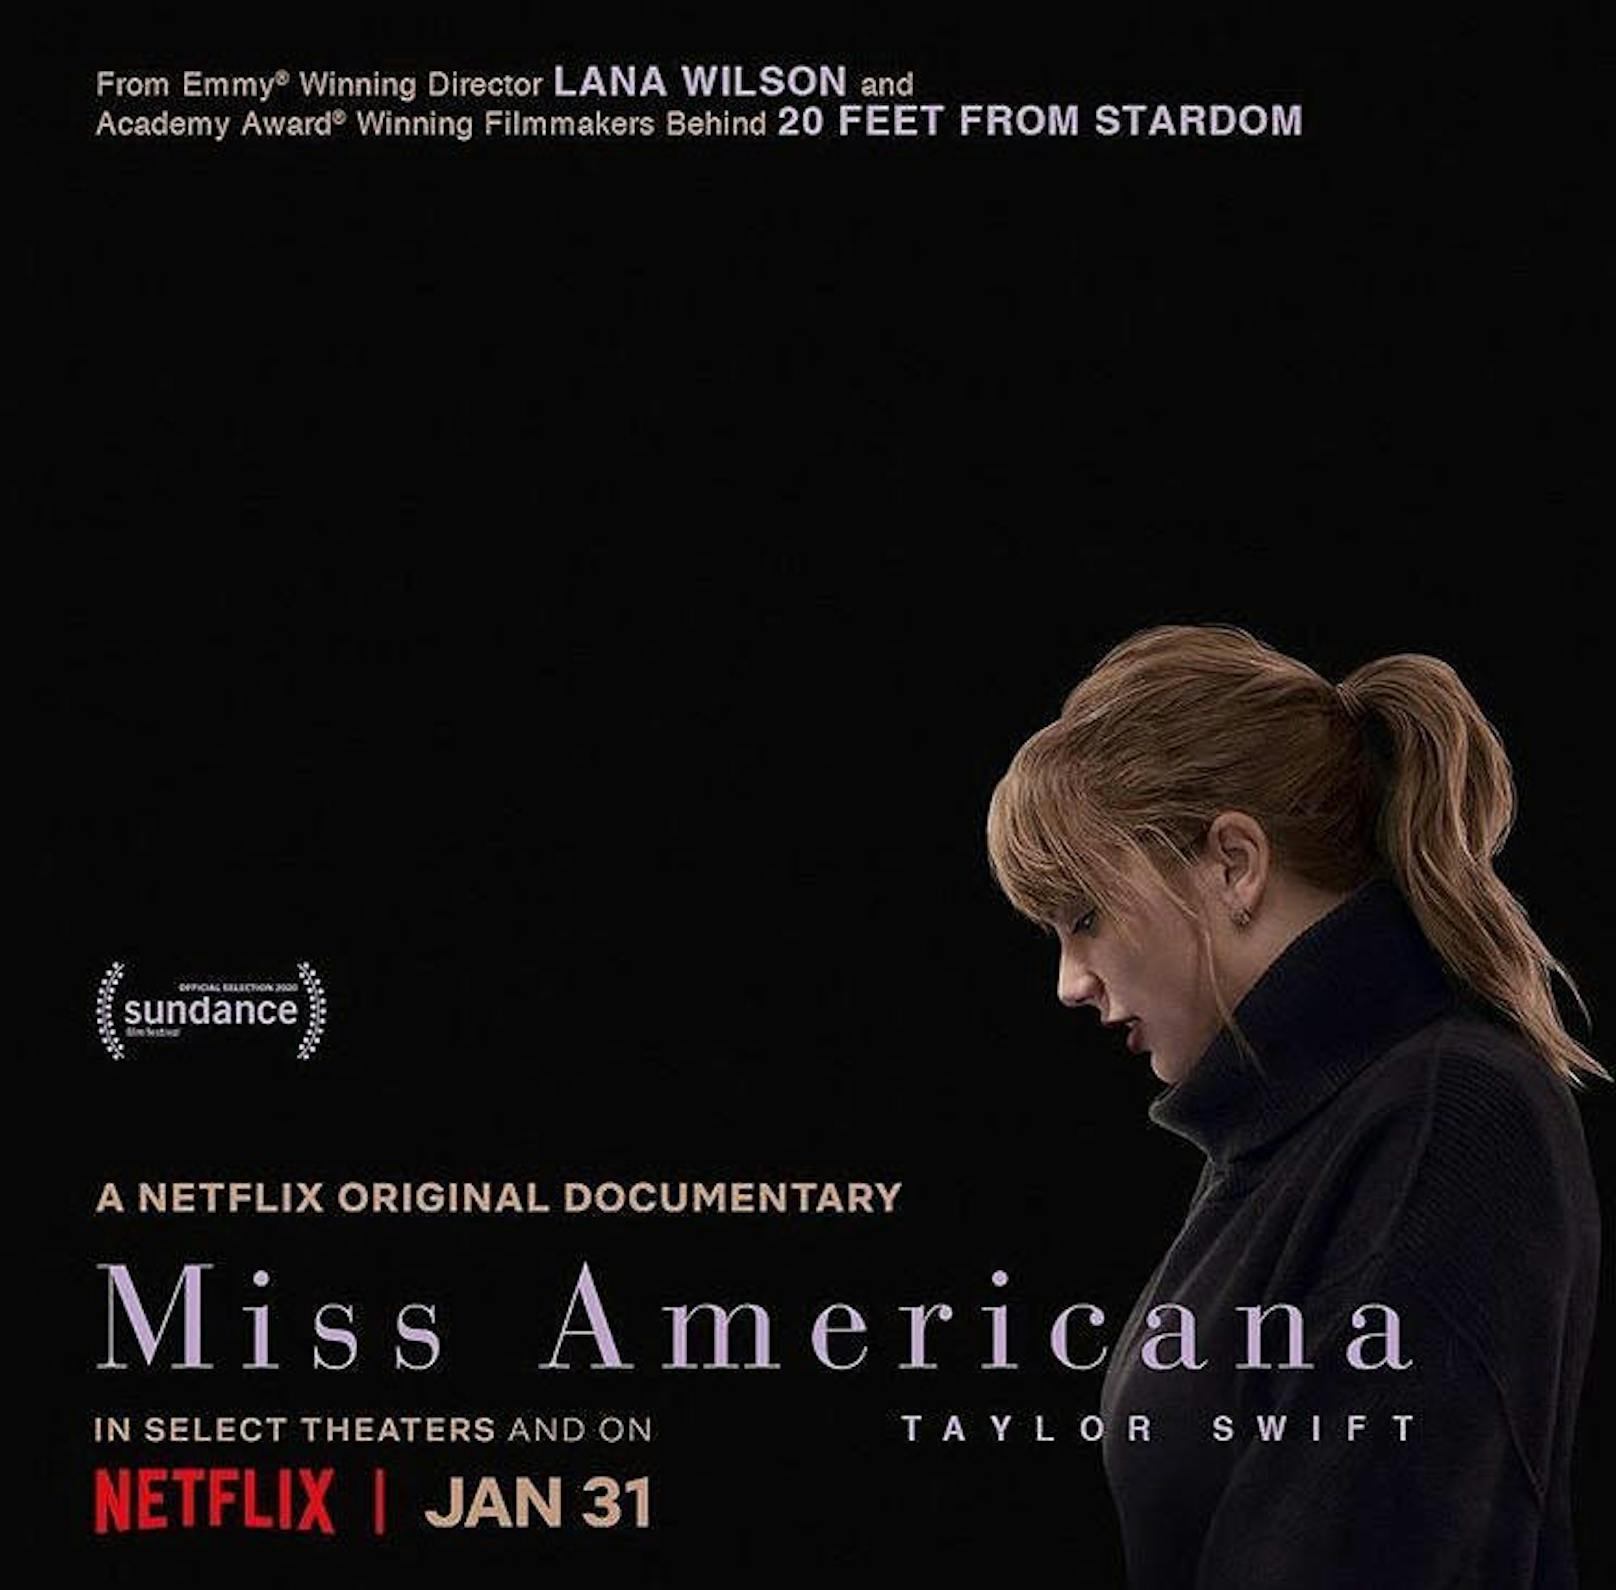 Am 31. Jänner 2020 veröffentlichte Netflix die Musik-Dokumentation "Miss Americana" über den Superstar Taylor Swift.